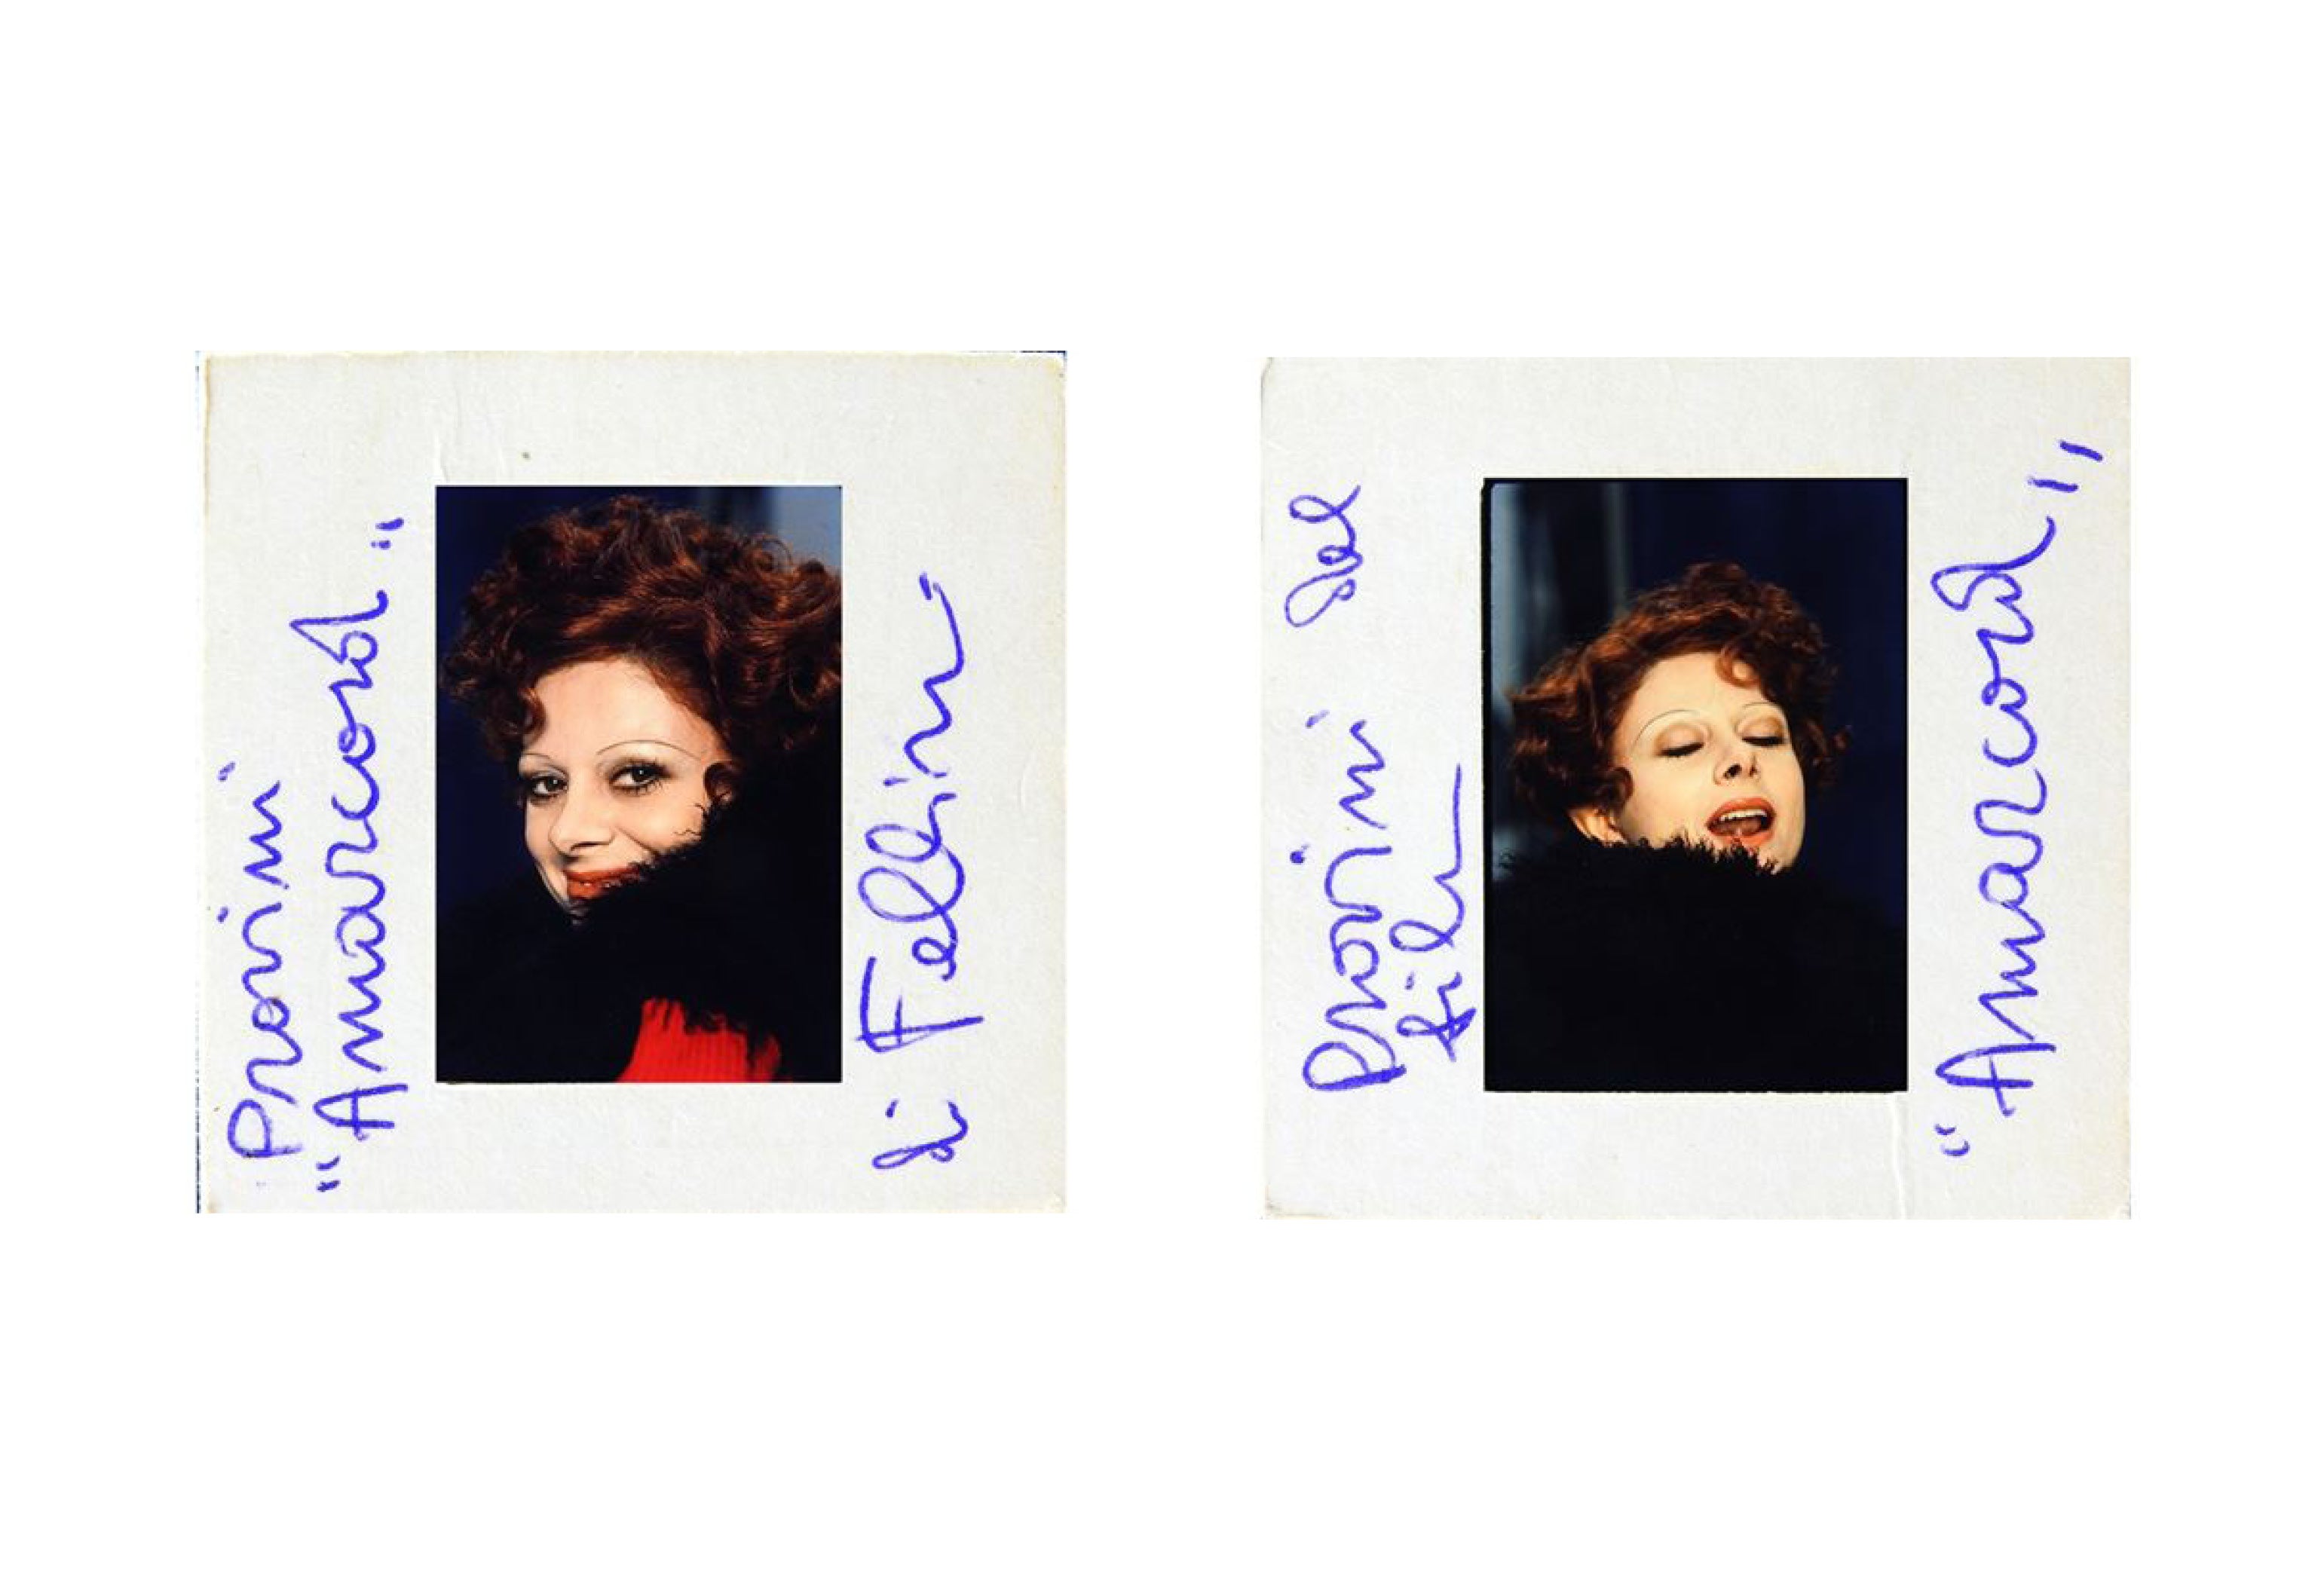 The rare polaroids of Sandra Milo's audition for the role of Gradisca in Federico Fellini's Amarcord, 1974.